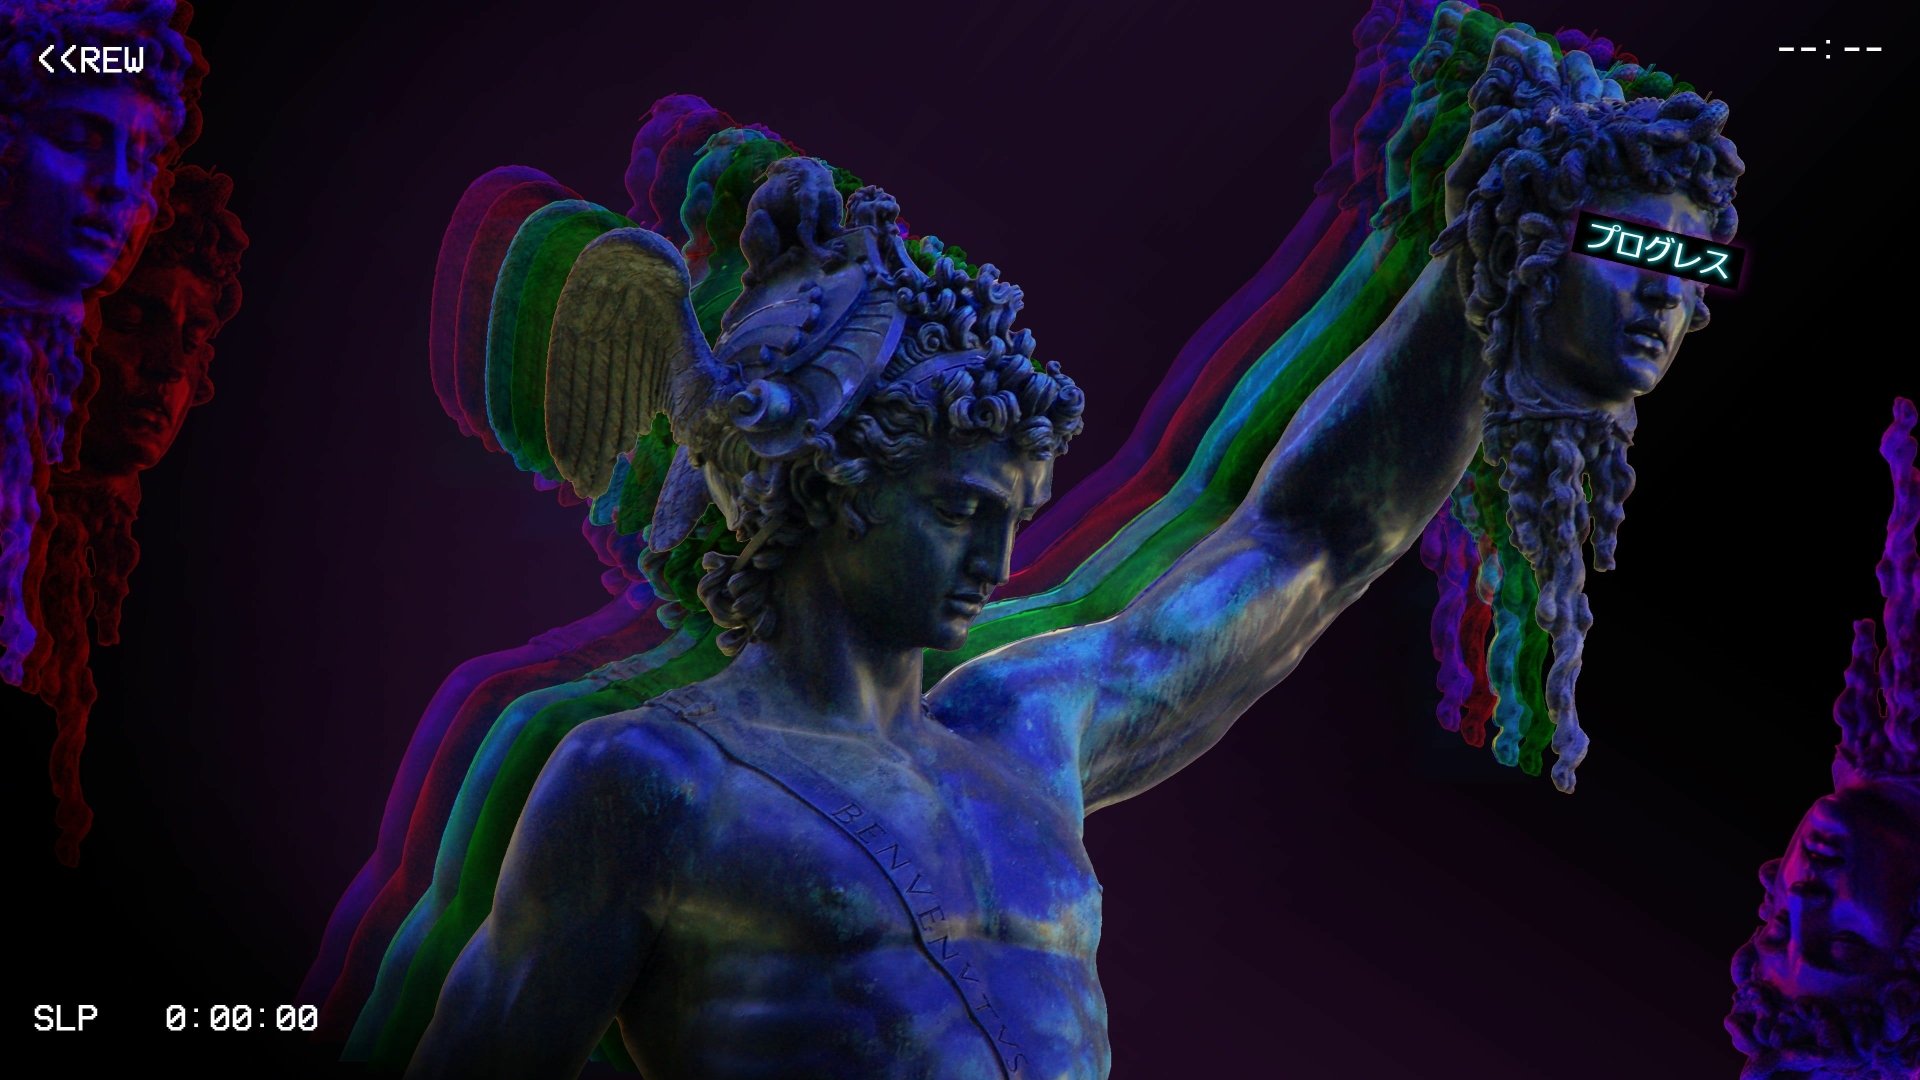 Download Medusa Statue Artistic Vaporwave 4k Ultra Hd Wallpaper 8313